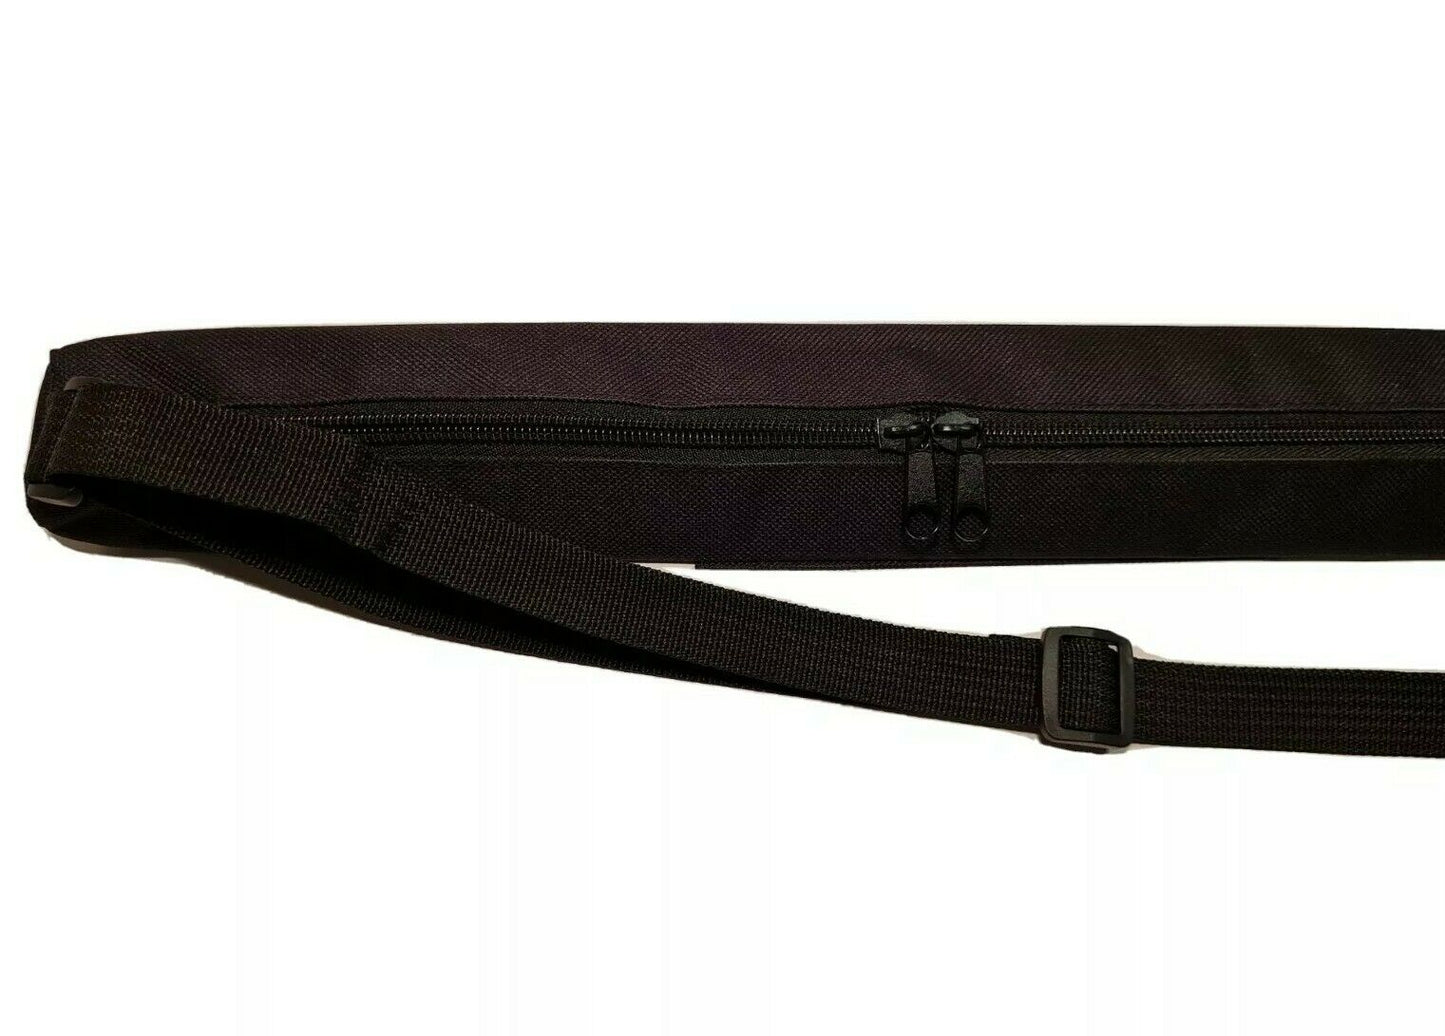 Carry Bag - 115cm Lightning Stik Metal Saber Carry Bag Shoulder Bag Case Pouch